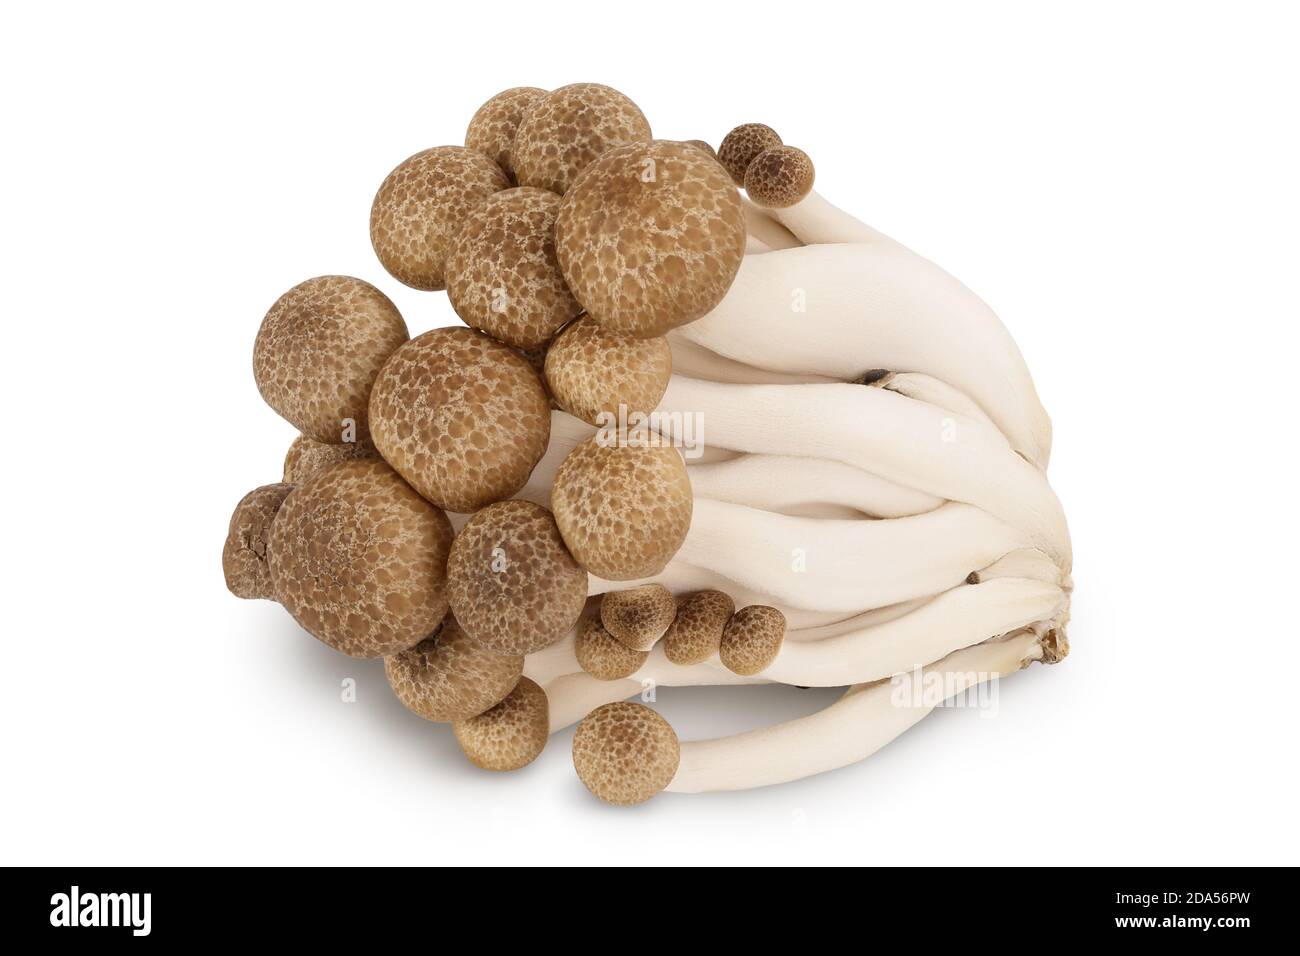 Funghi di faggio marroni o funghi Shimeji isolati su sfondo bianco con percorso di ritaglio e profondità di campo completa. Foto Stock